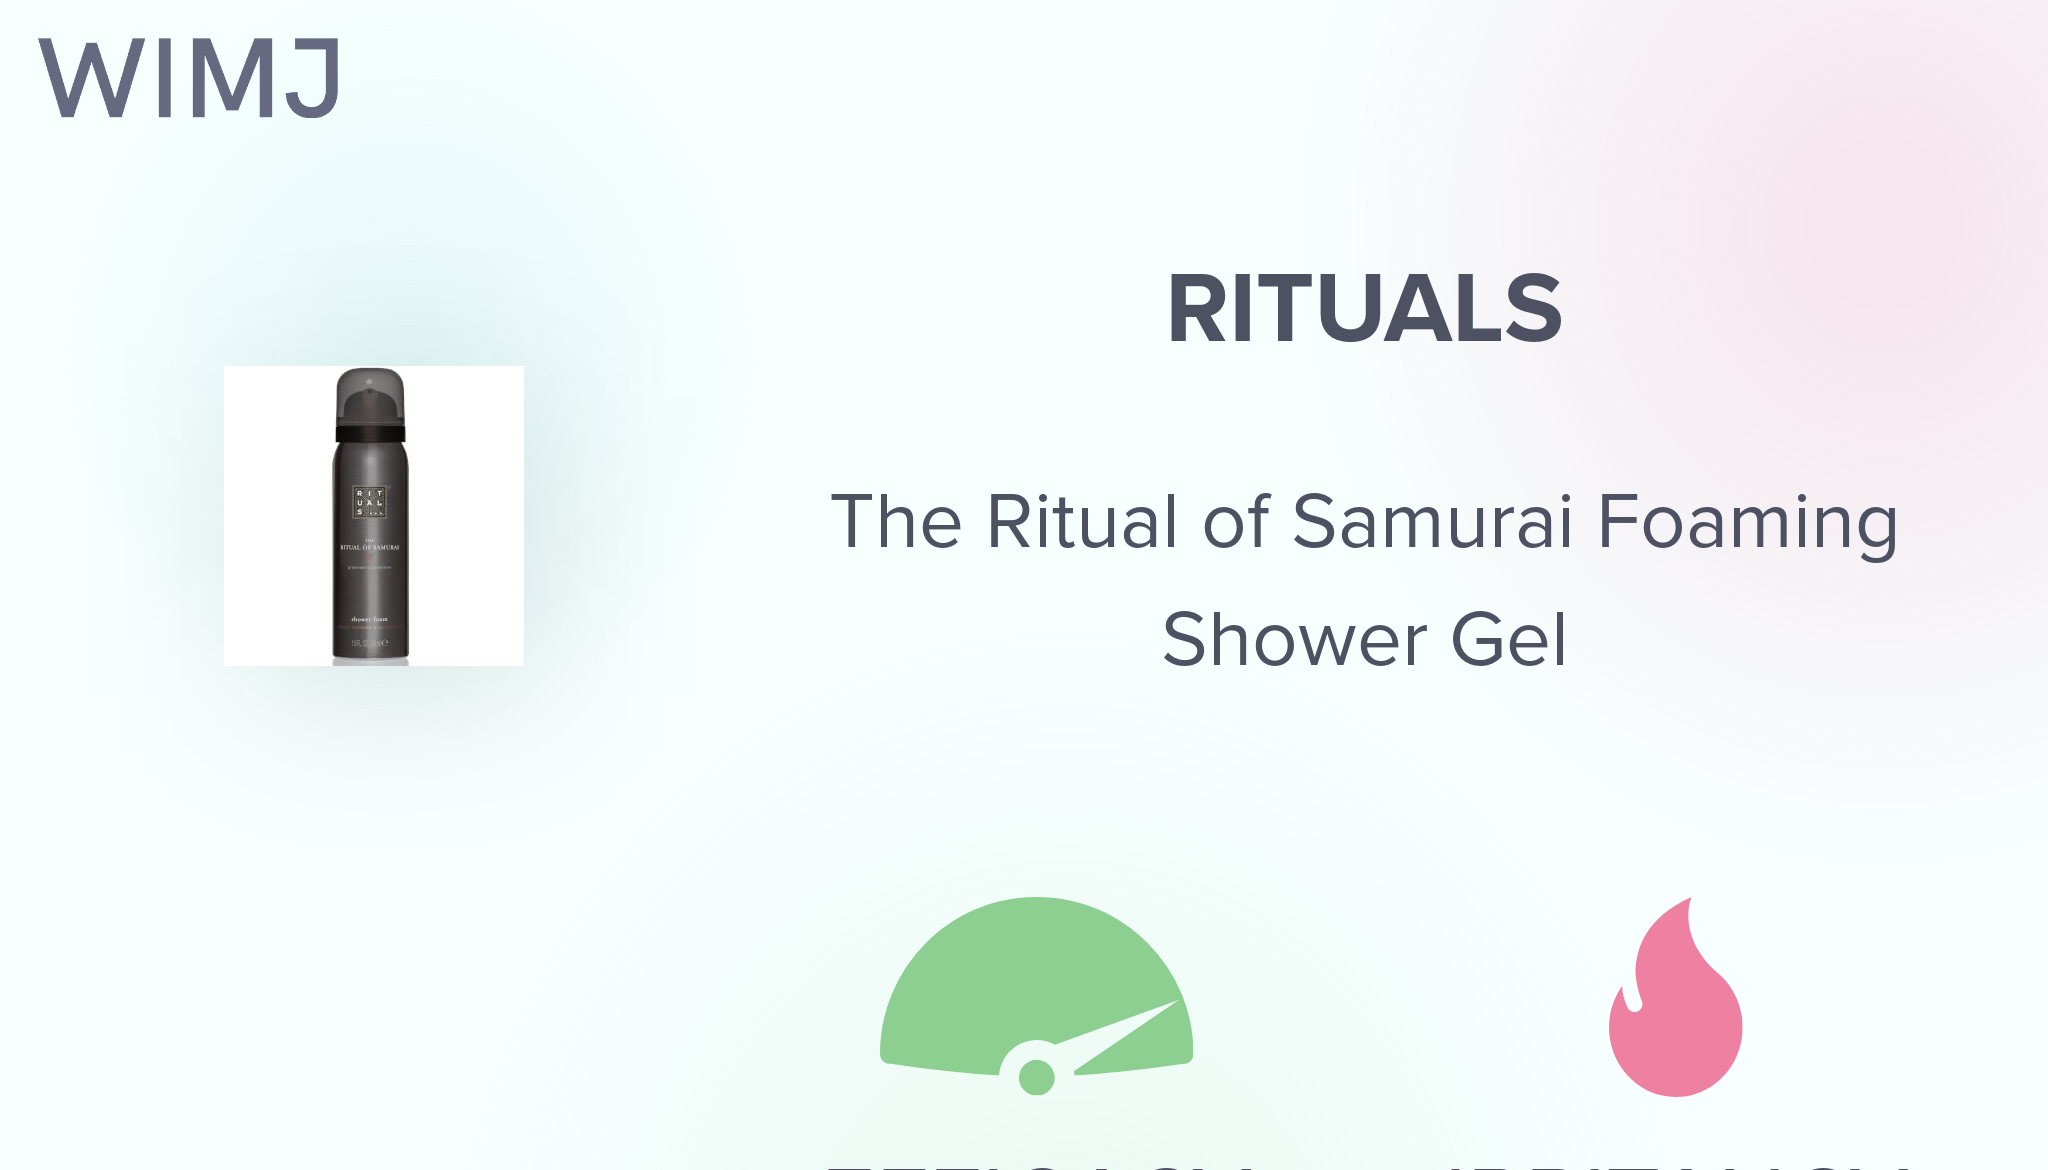 Review: RITUALS - The Ritual of Samurai Foaming Shower Gel - WIMJ